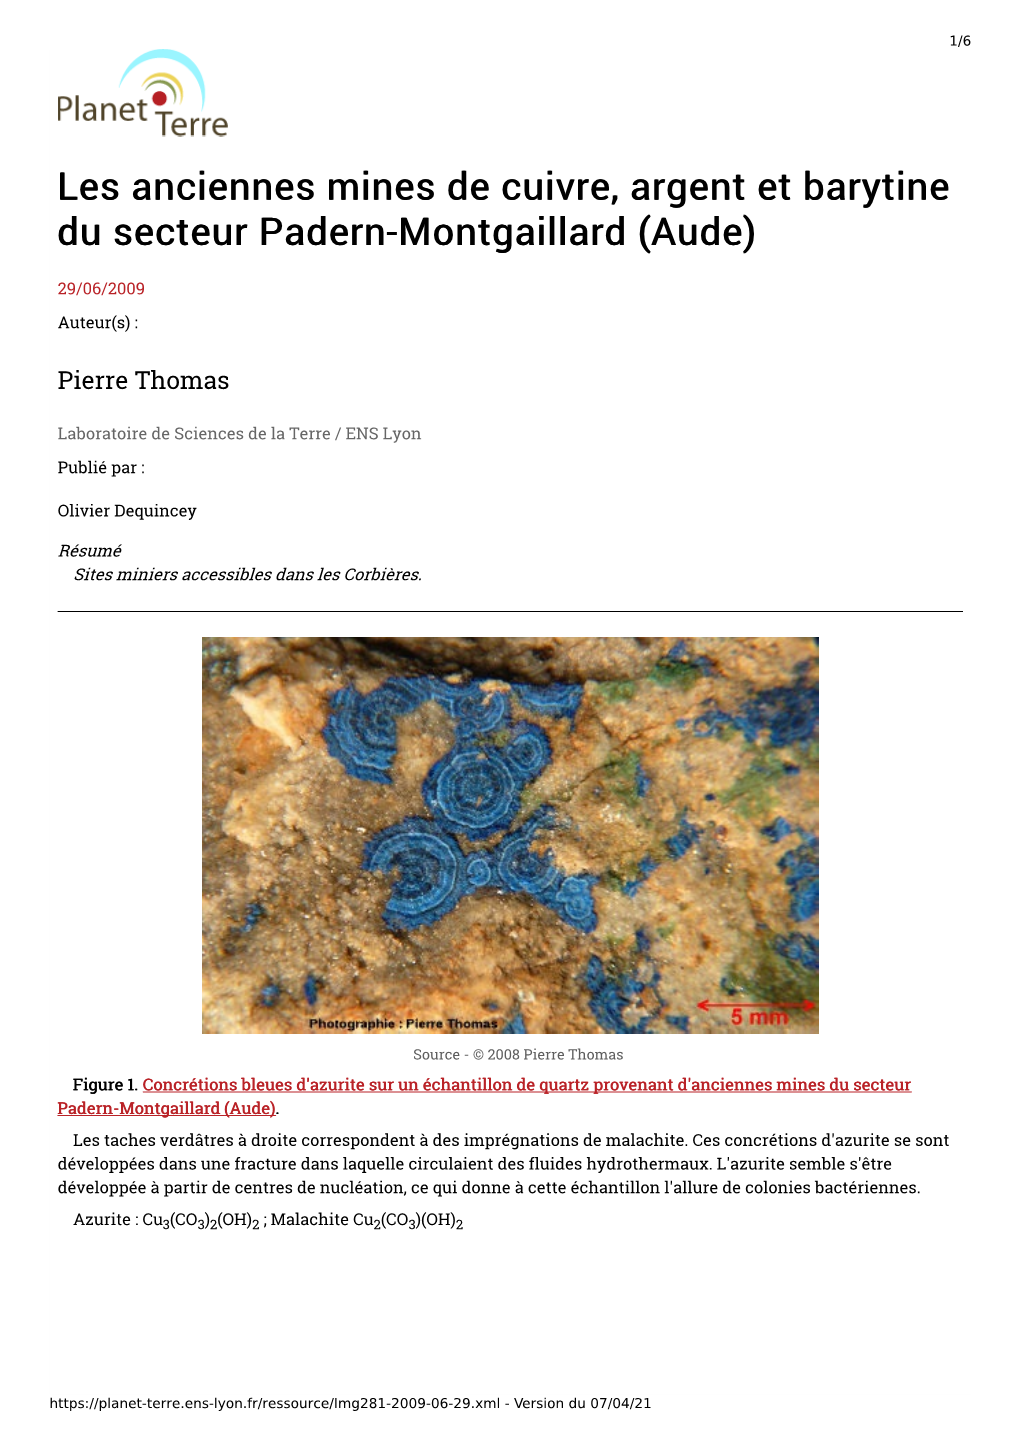 Les Anciennes Mines De Cuivre, Argent Et Barytine Du Secteur Padern-Montgaillard (Aude)